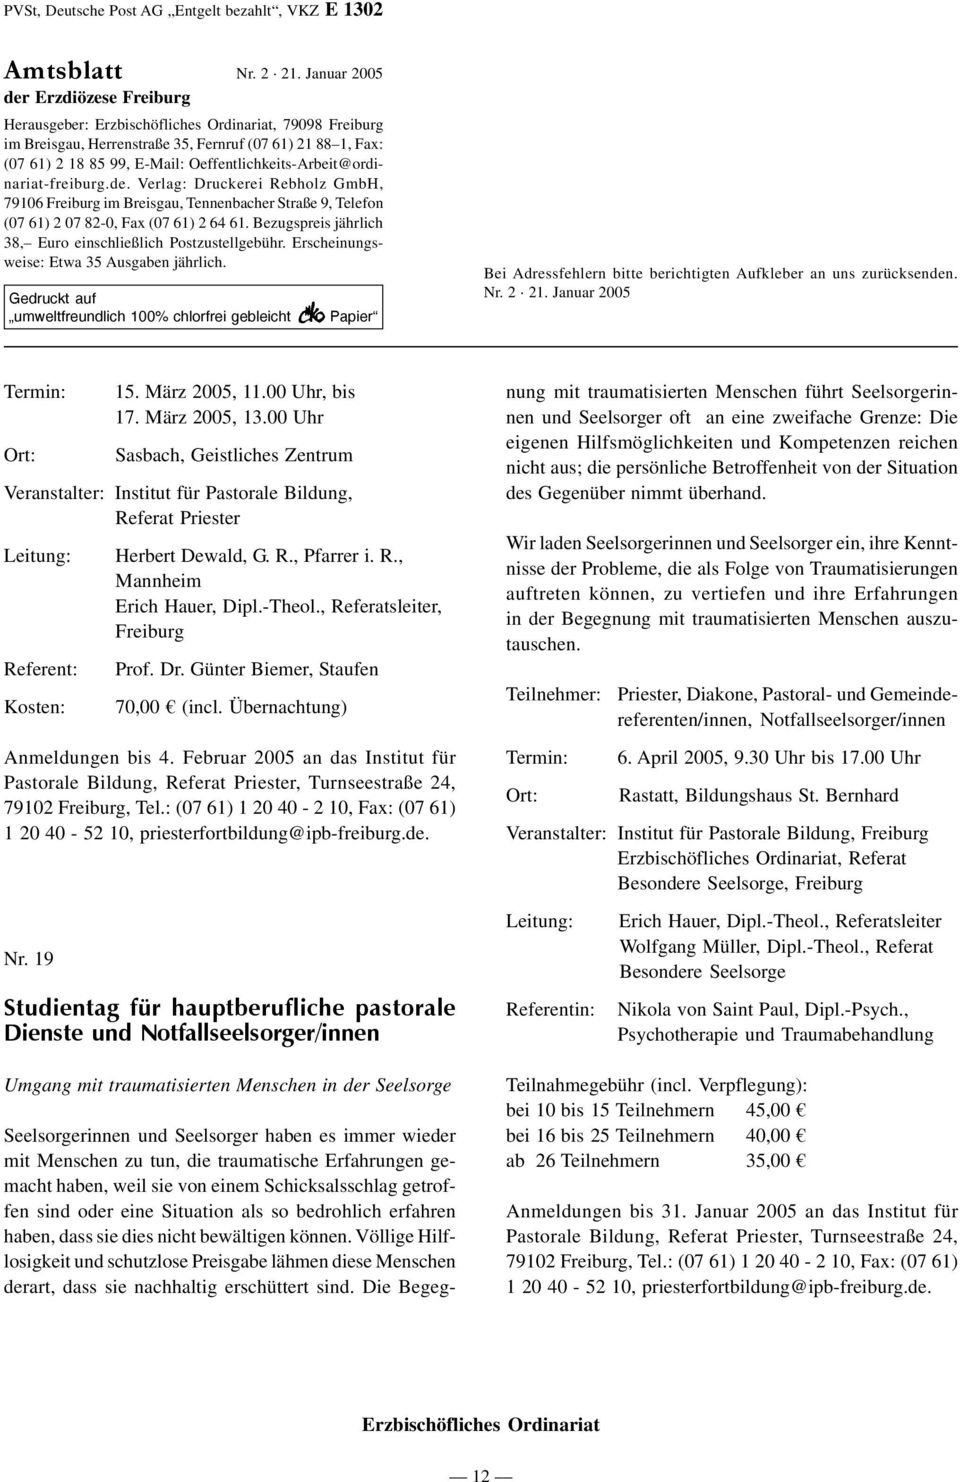 Oeffentlichkeits-Arbeit@ordinariat-freiburg.de. Verlag: Druckerei Rebholz GmbH, 79106 Freiburg im Breisgau, Tennenbacher Straße 9, Telefon (07 61) 2 07 82-0, Fax (07 61) 2 64 61.